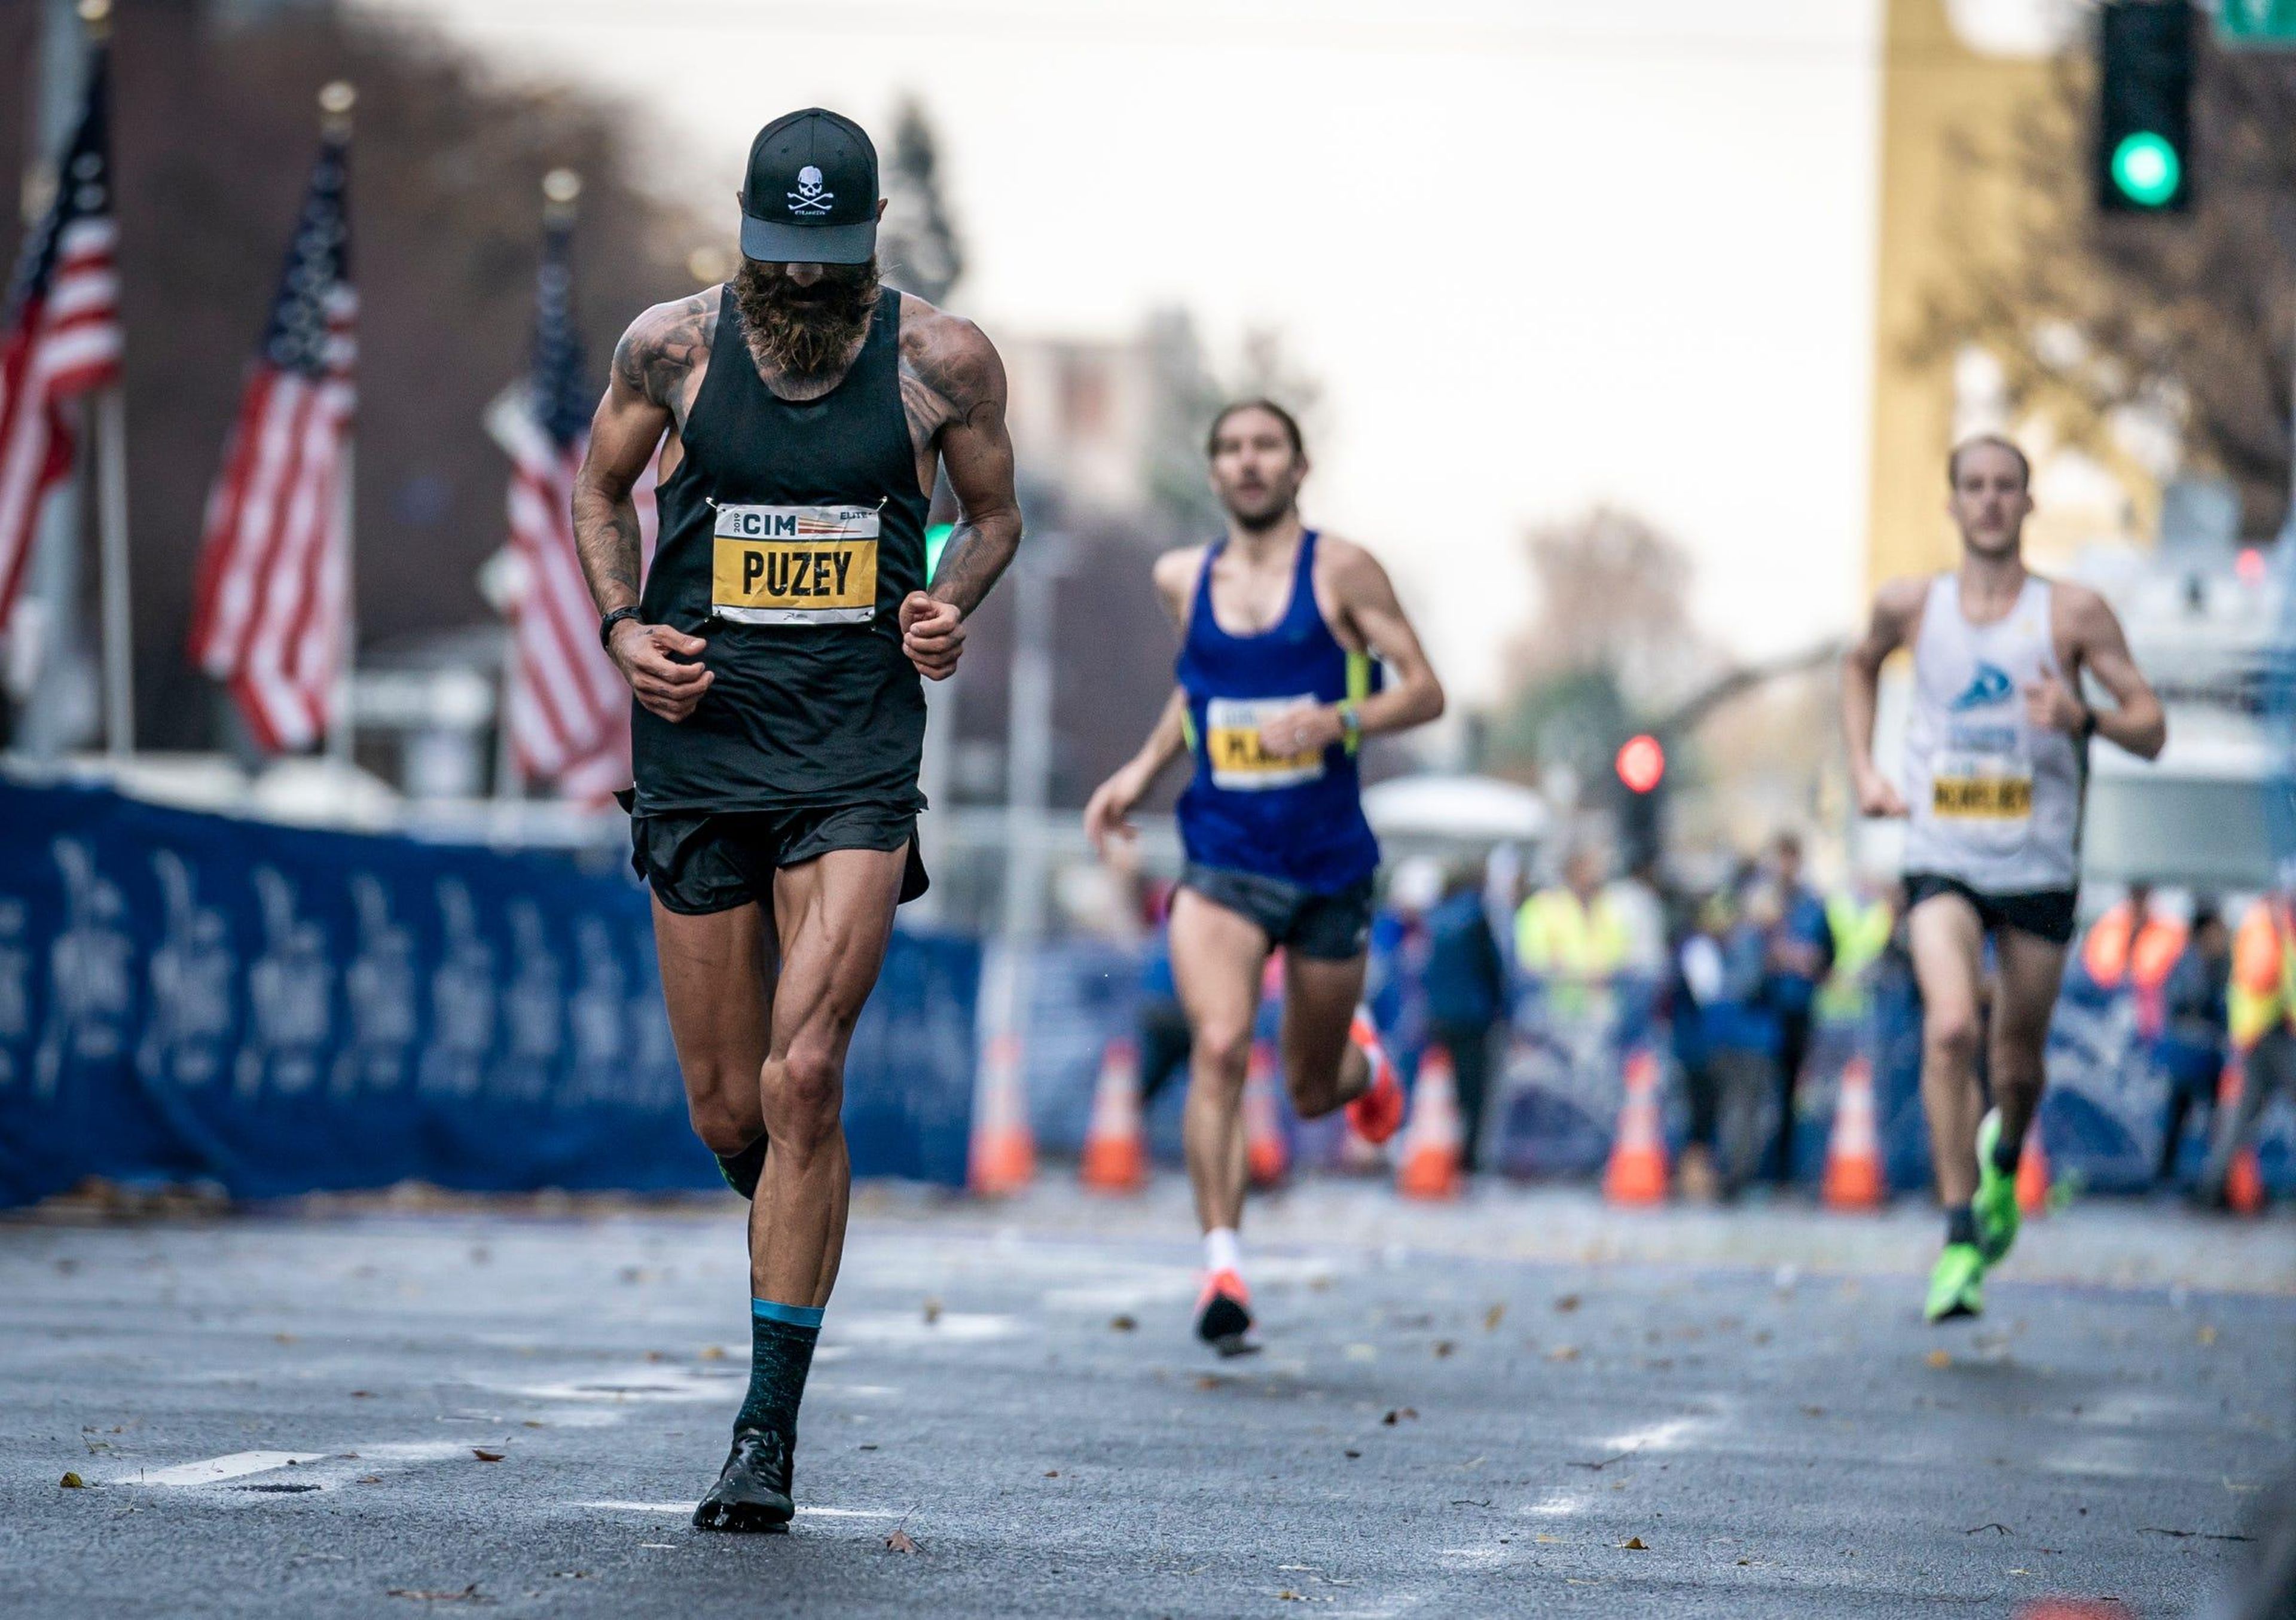 Tommy Rivers Puzey corriendo en el Maratón Internacional de California 2019 el 8 de diciembre en Sacramento, California.